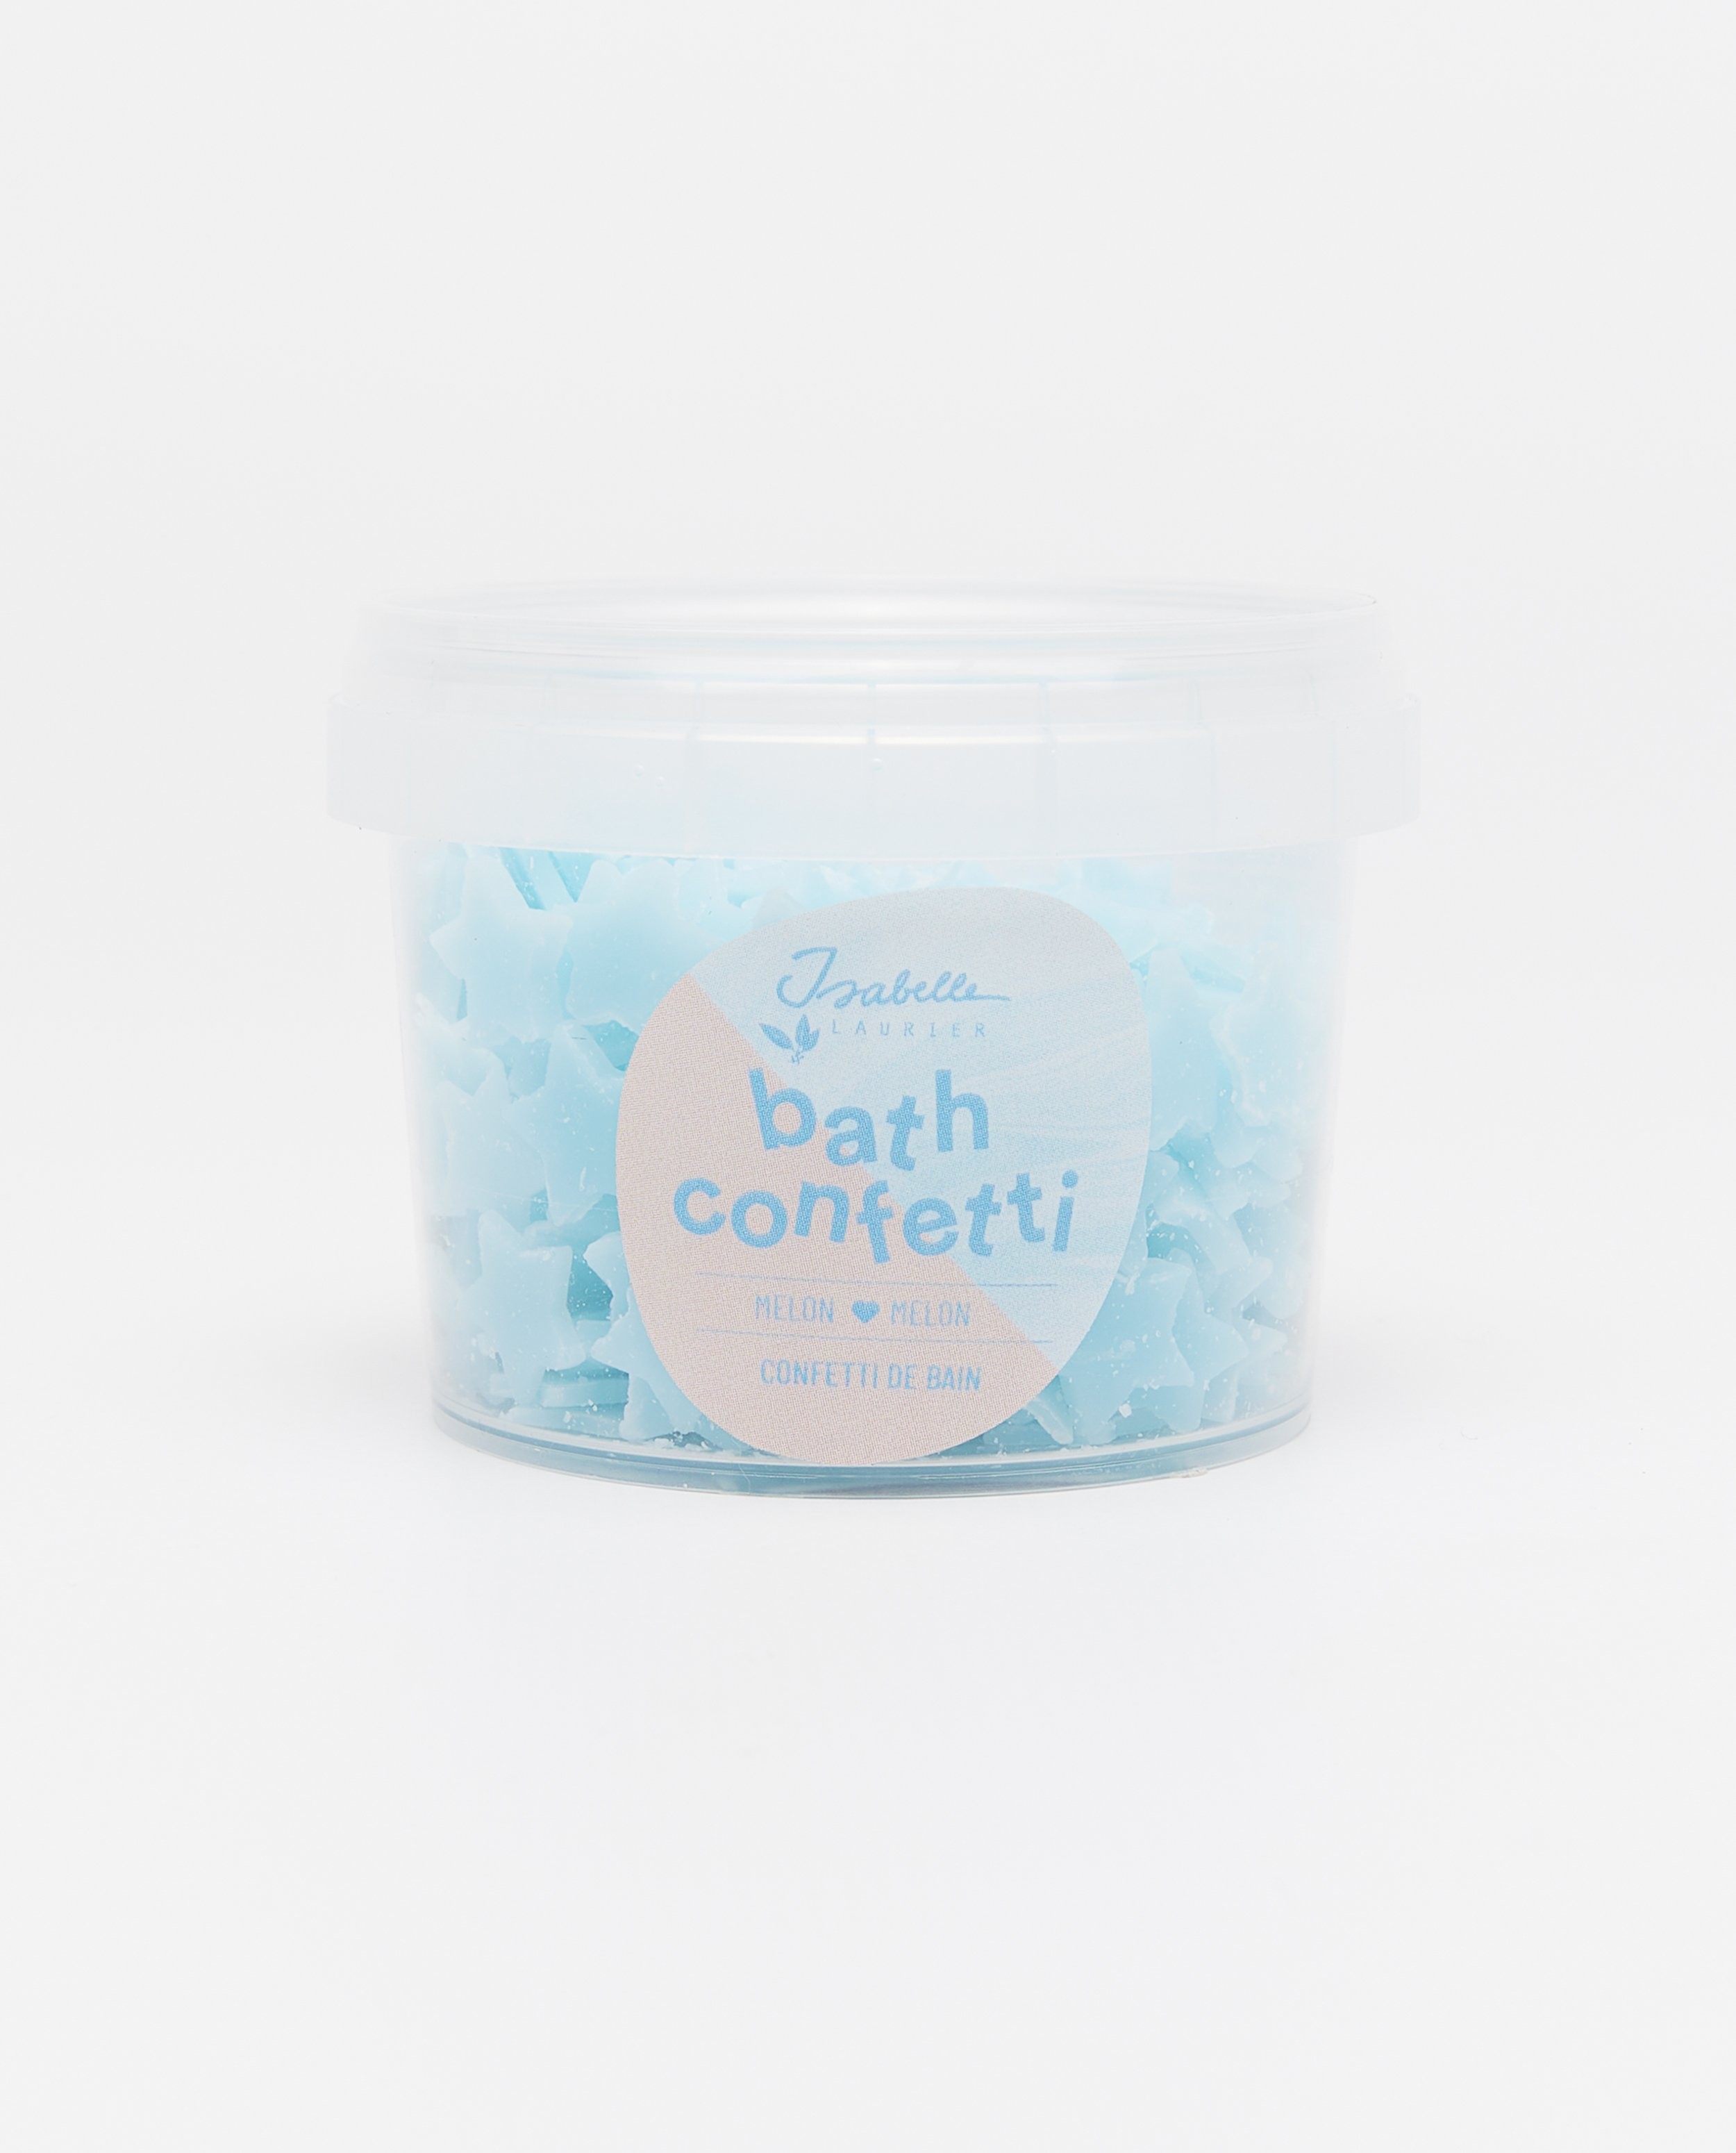 Confettis de bain melon - null - Isabelle Laurier